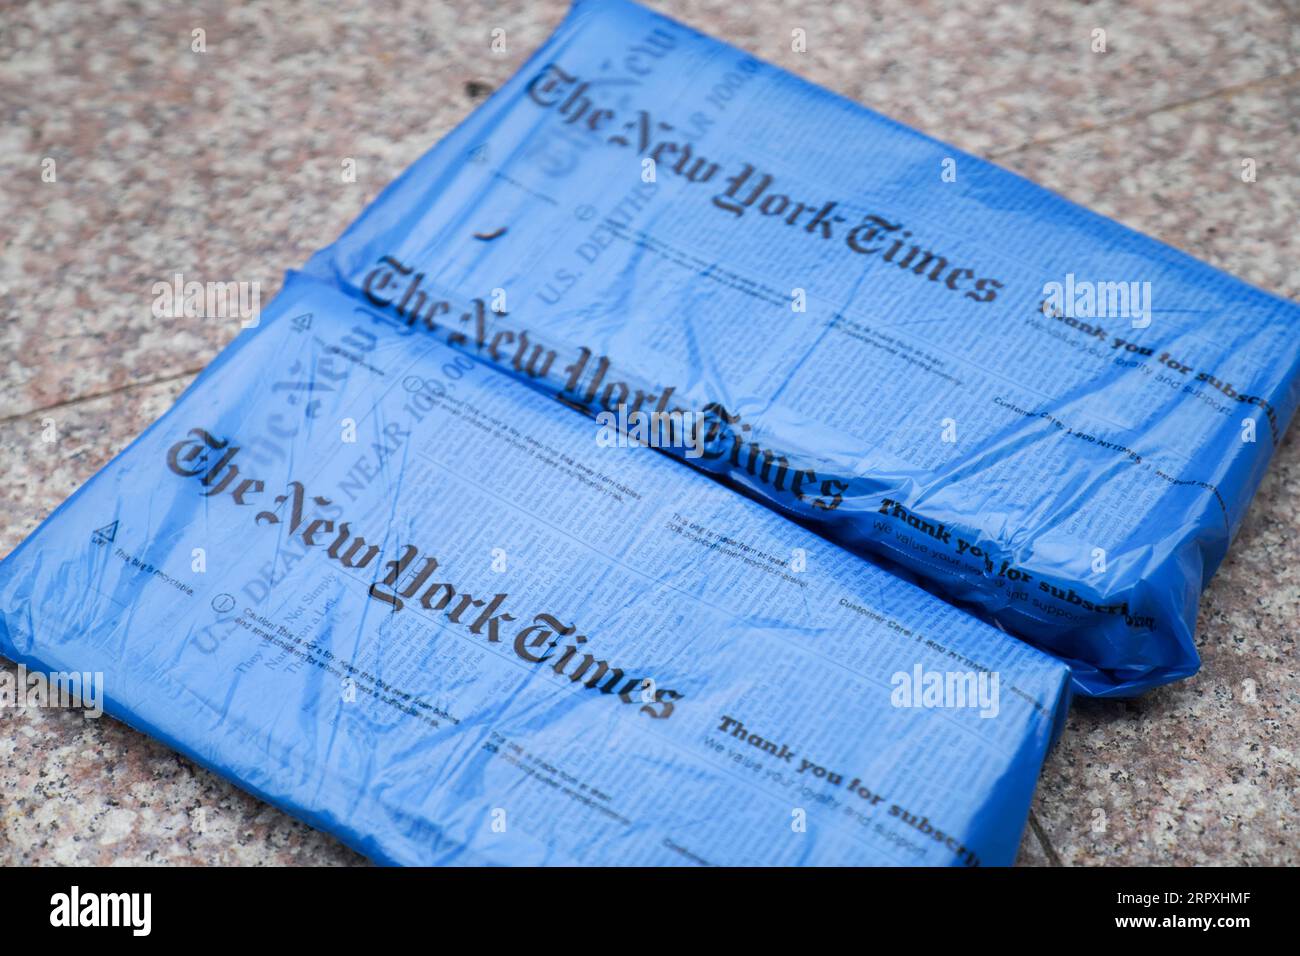 200525 -- NEW YORK, 25. Mai 2020 -- Foto aufgenommen am 24. Mai 2020 zeigt die New York Times am Sonntag in New York, USA. Auf der Titelseite der New York Times am Sonntag sind die Namen von 1.000 Menschen zu sehen, die in den Vereinigten Staaten an COVID-19 gestorben sind. Die Zeitung nannte es einen nicht kalkulierbaren Verlust und stellte klar, dass die 1.000 Menschen hier nur 1 Prozent der Maut widerspiegeln. U.S.-NEW YORK-COVID-19-DEATH TOLL-NEW YORK TIMES WANGXYING PUBLICATIONXNOTXINXCHN Stockfoto